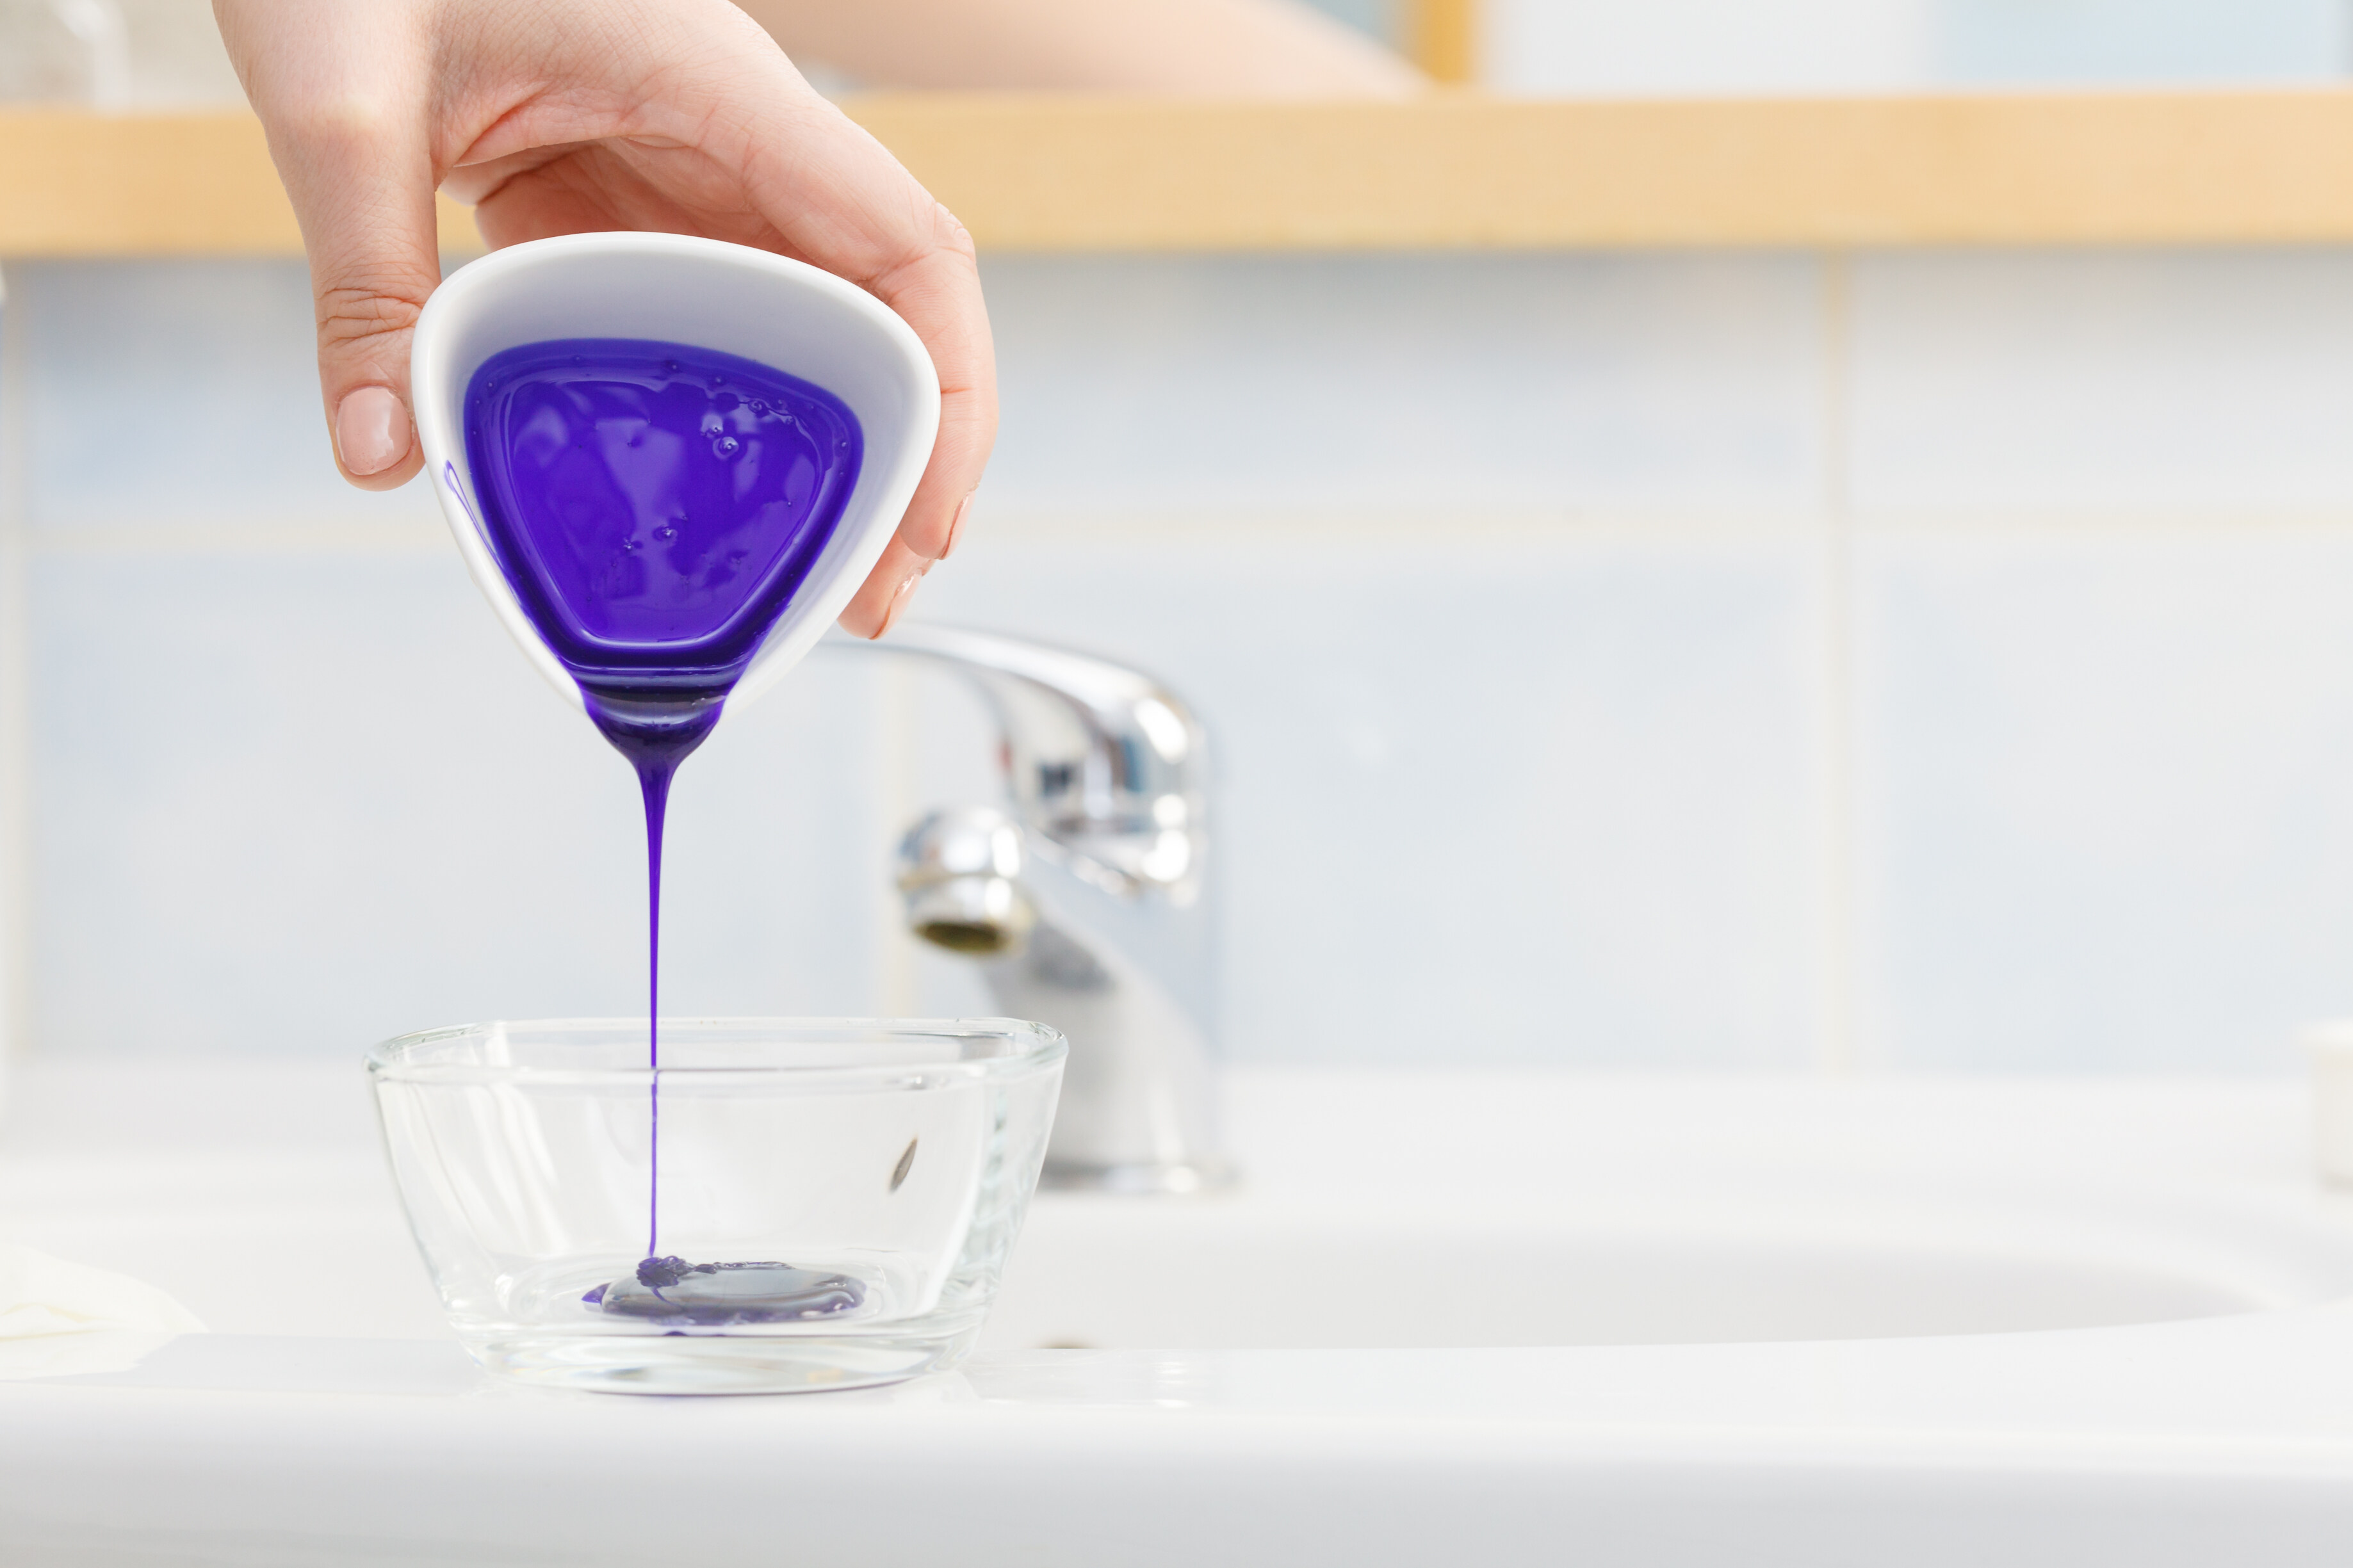 去黃洗頭水原理就是利用紫色色素去中和頭髮上的黃色。